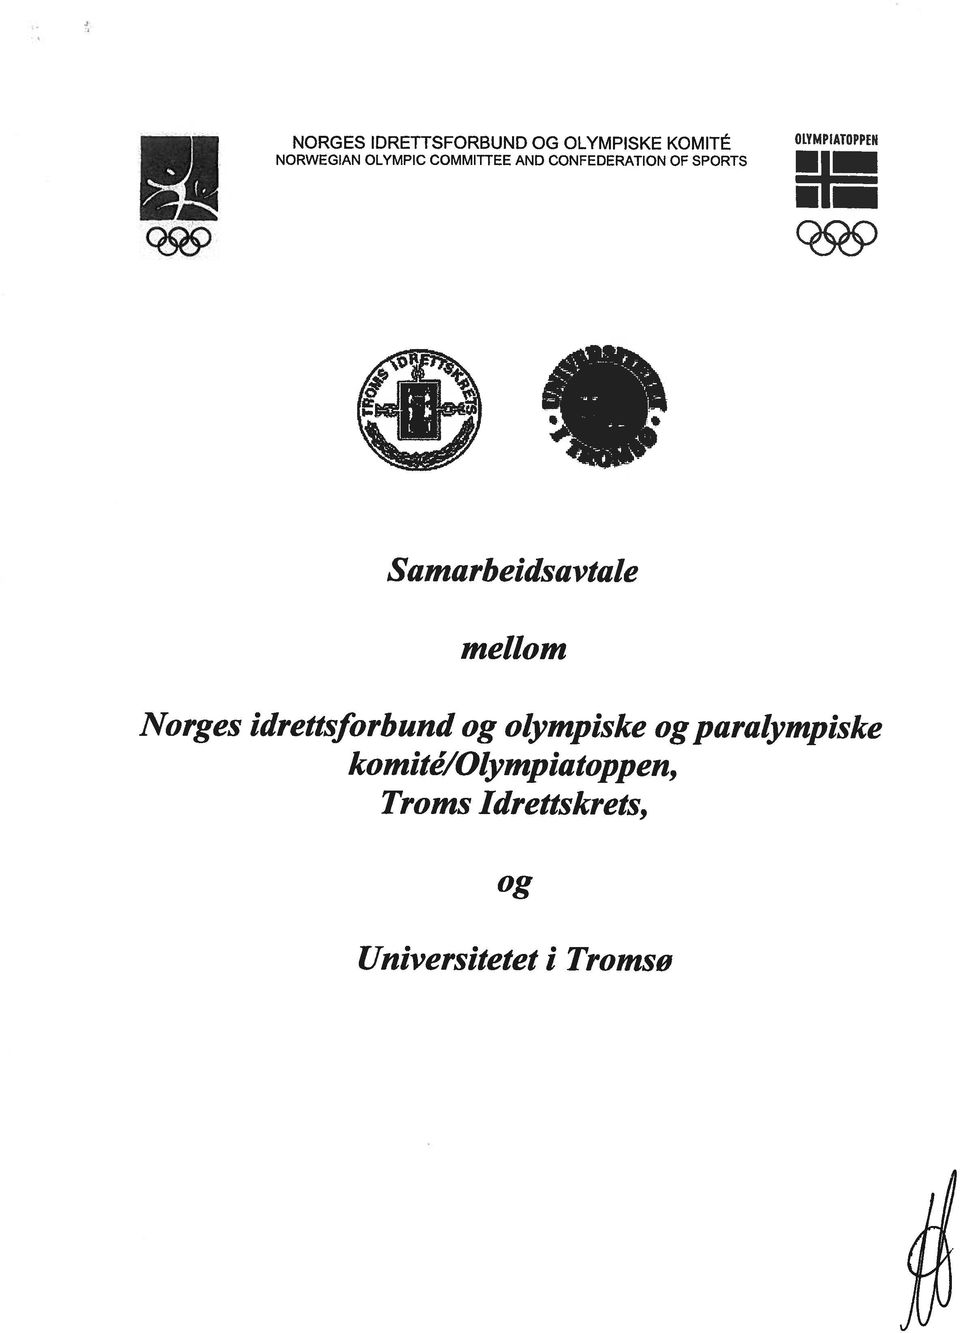 Samarbeidsavtale mellom Norges idrettsforbund og olympiske